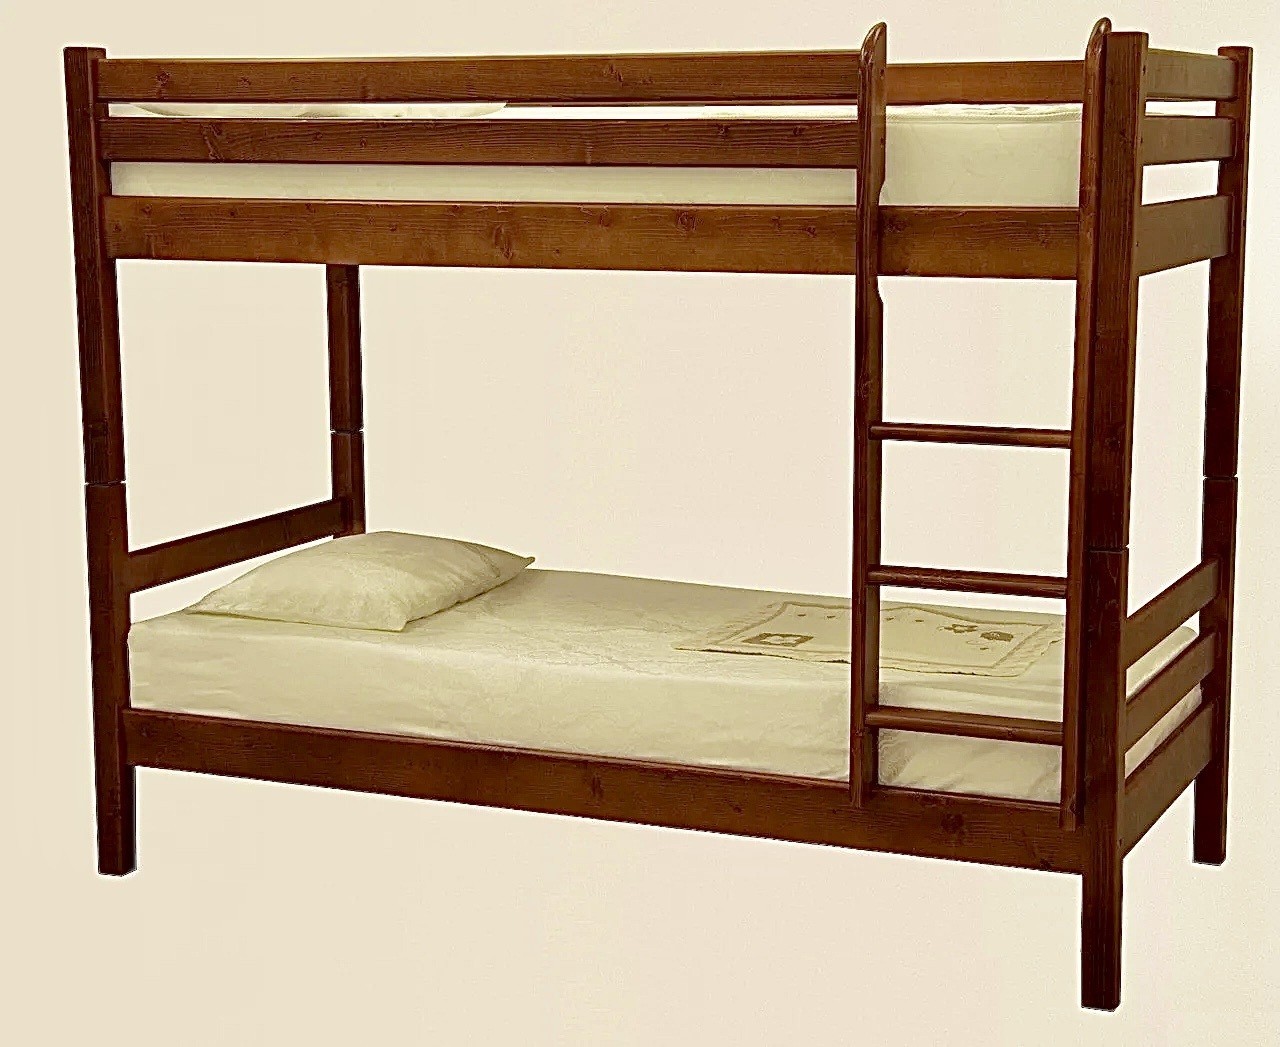 Кровать двухъярусная деревянная или металлическая